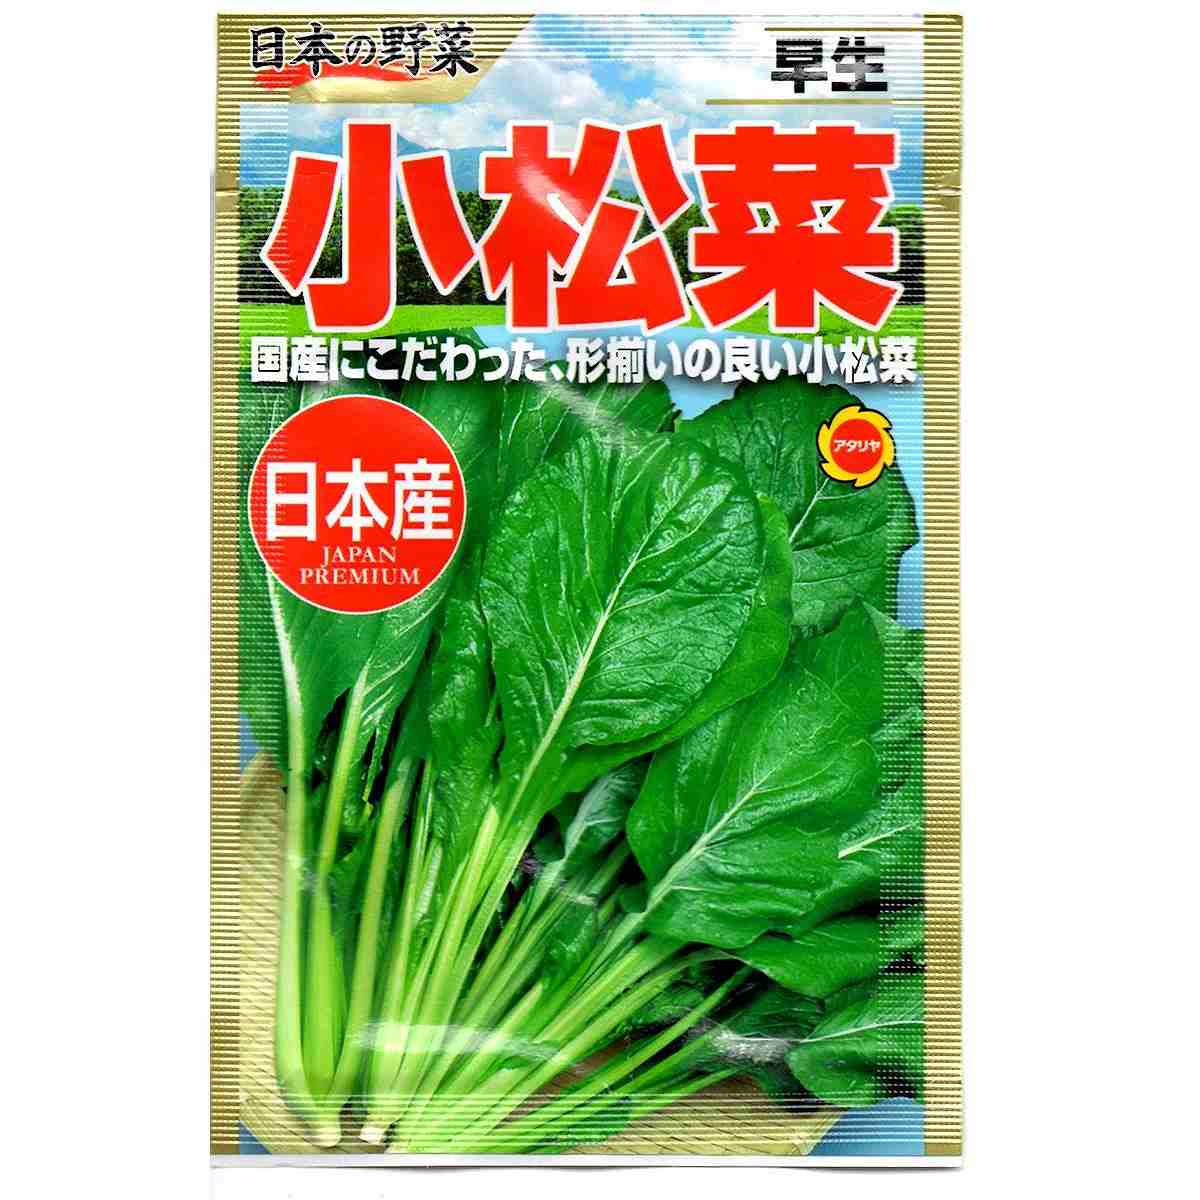 日本の野菜 早生 小松菜 アタリヤ農園 国産にこだわった 形揃いの良い小松菜 野菜種 M